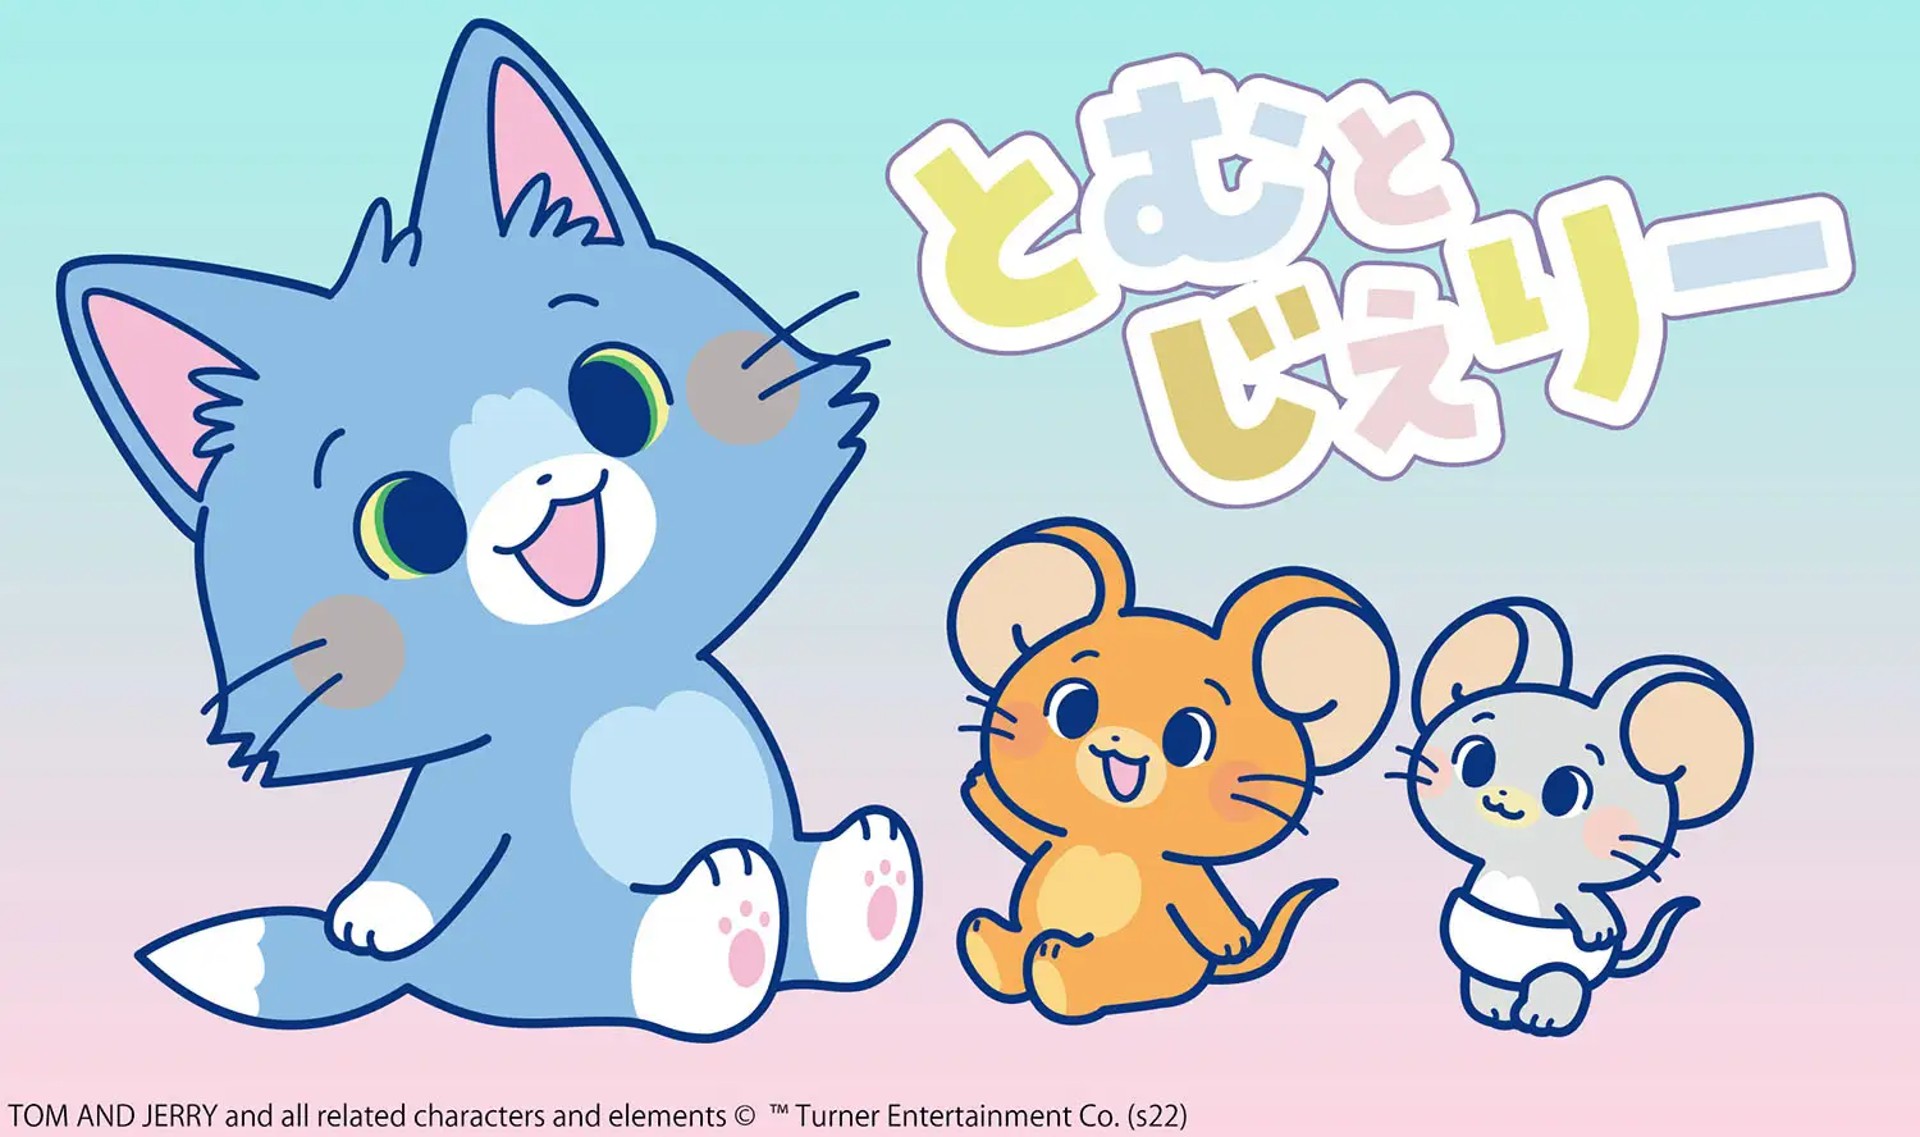 Tom and Jerry ได้รับการรีเมกใหม่ น่ารัก สดใส ความสไตล์ประเทศญี่ปุ่น